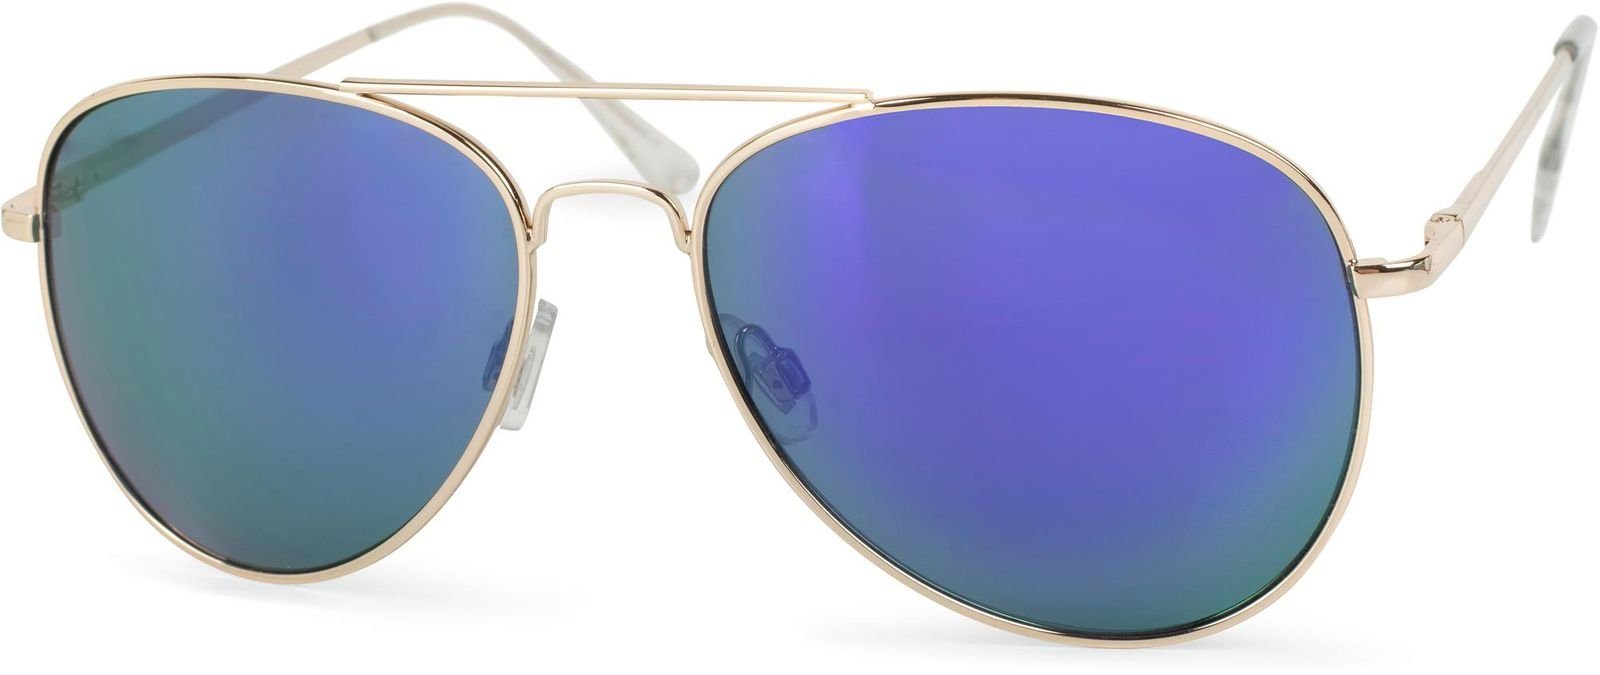 Sonnenbrille Pilotenbrille Fliegerbrille Brille Verspiegelt Gold Blau 